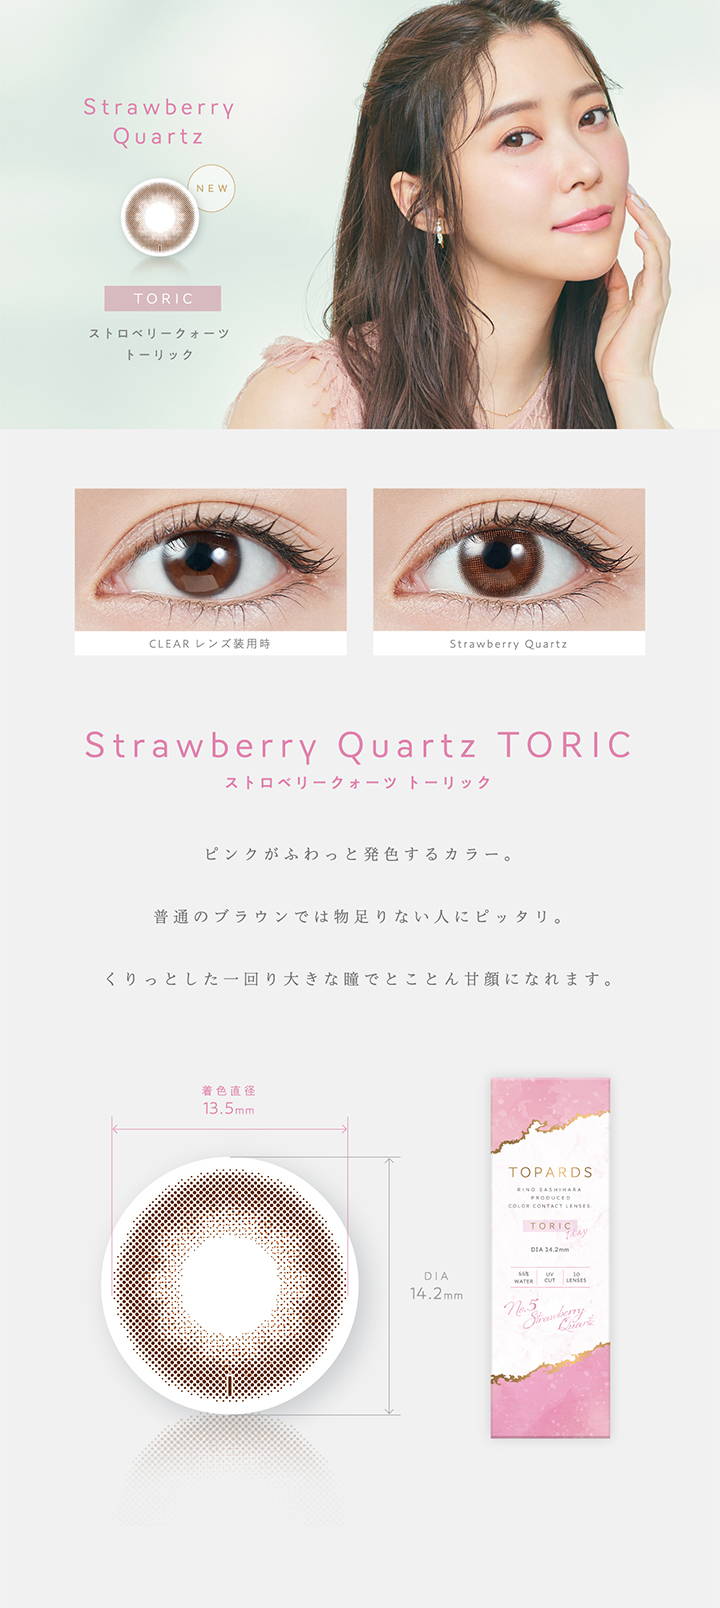 【乱視用:乱視度数:-1.25D】 Strawberry Quartz TORIC(ストロベリークォーツトーリック),新色,ピンクがふわっと発色するカラー。普通のブラウンでは物足りない人にピッタリ。くりっとした一回り大きな瞳でとことん甘顔になれます。,着色直径13.5mm,DIA14.2mm|TOPARDS TORIC(トパーズトーリック)コンタクトレンズ